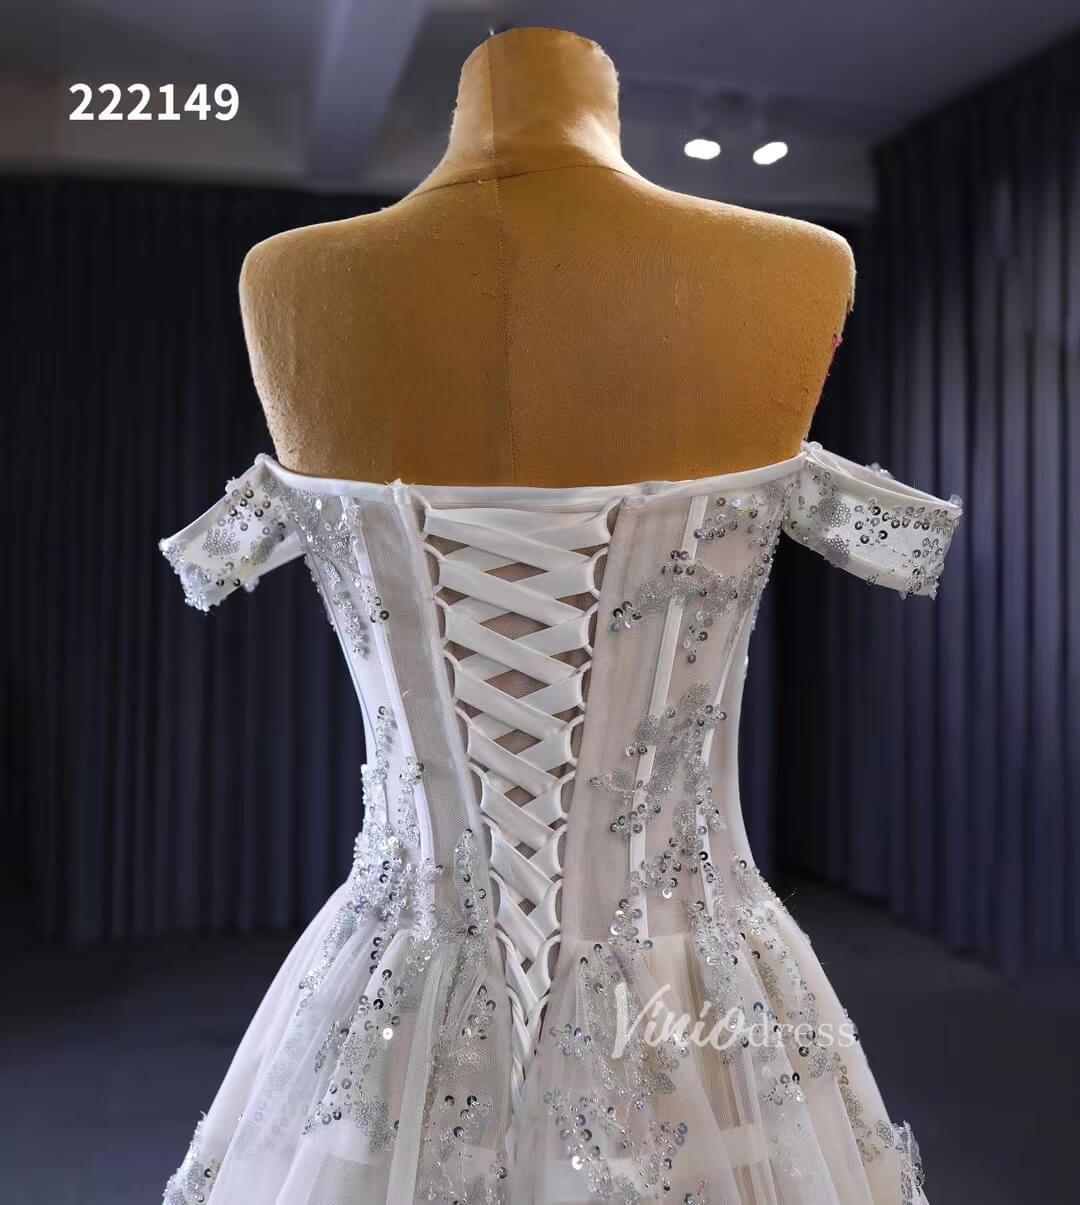 Beaded Floral Wedding Dresses Off the Shoulder 222149-wedding dresses-Viniodress-Viniodress